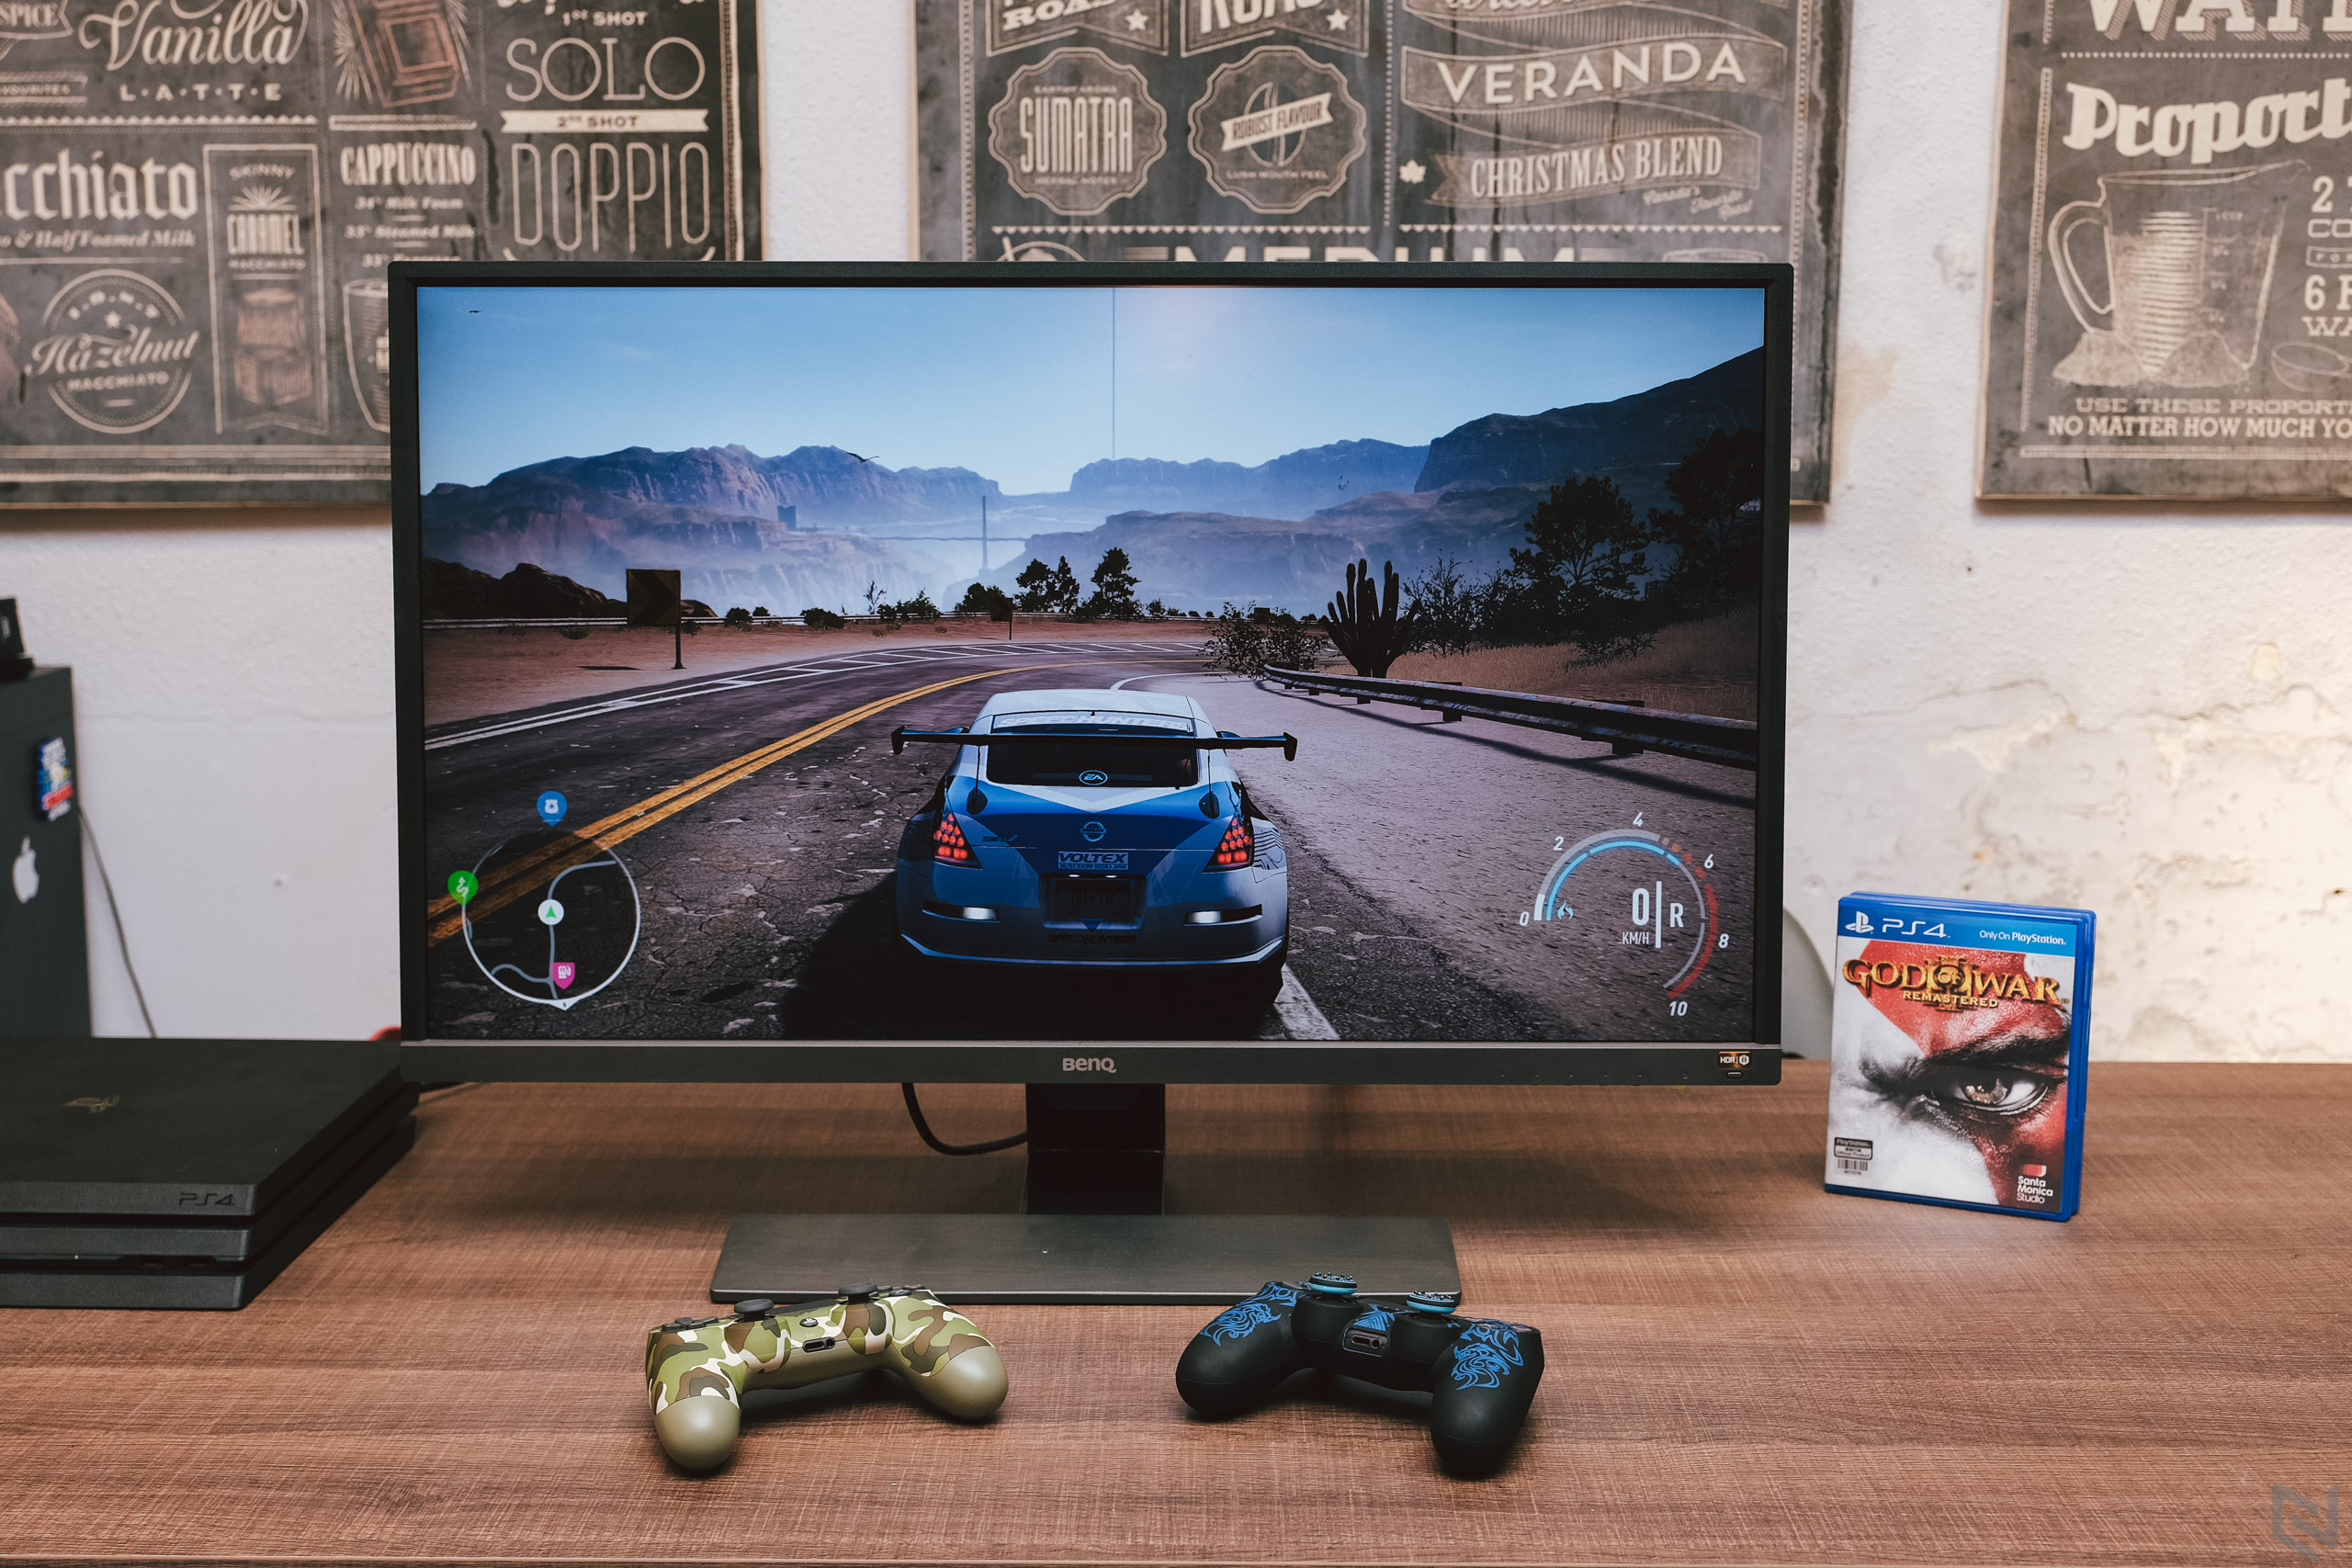 Đánh giá màn hình 4K HDR BenQ EW3270U, công nghệ Ánh sáng thông minh (B.I+), phù hợp giải trí và chơi game PS4